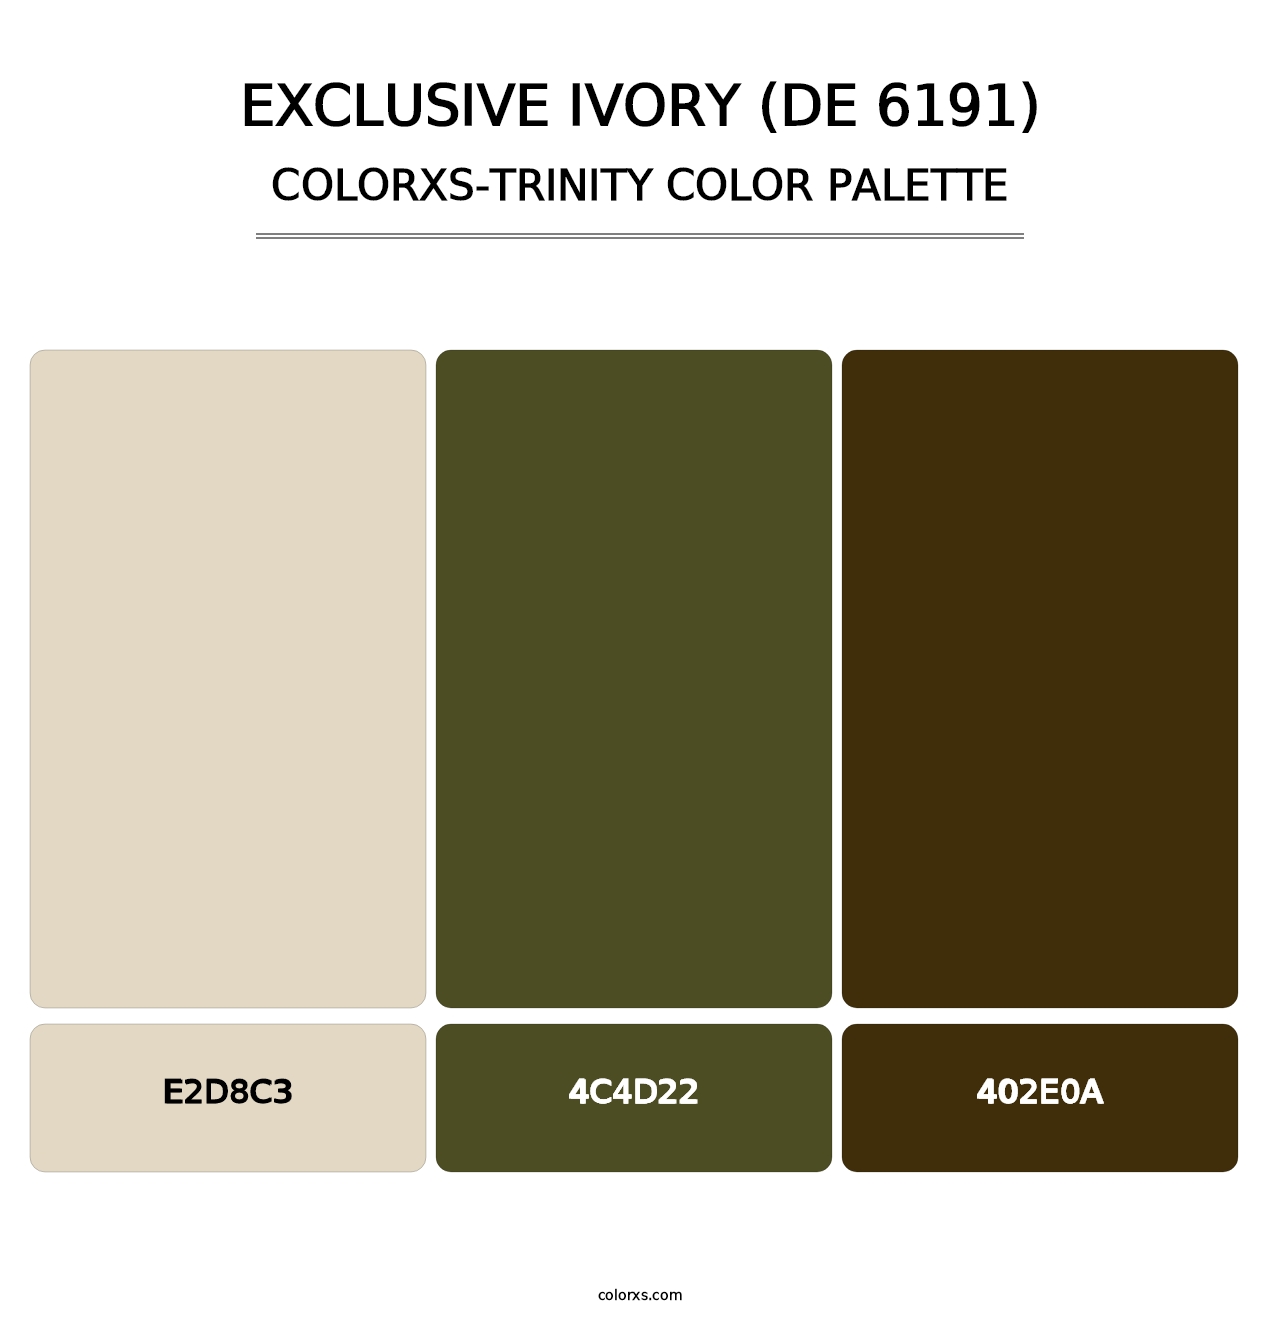 Exclusive Ivory (DE 6191) - Colorxs Trinity Palette